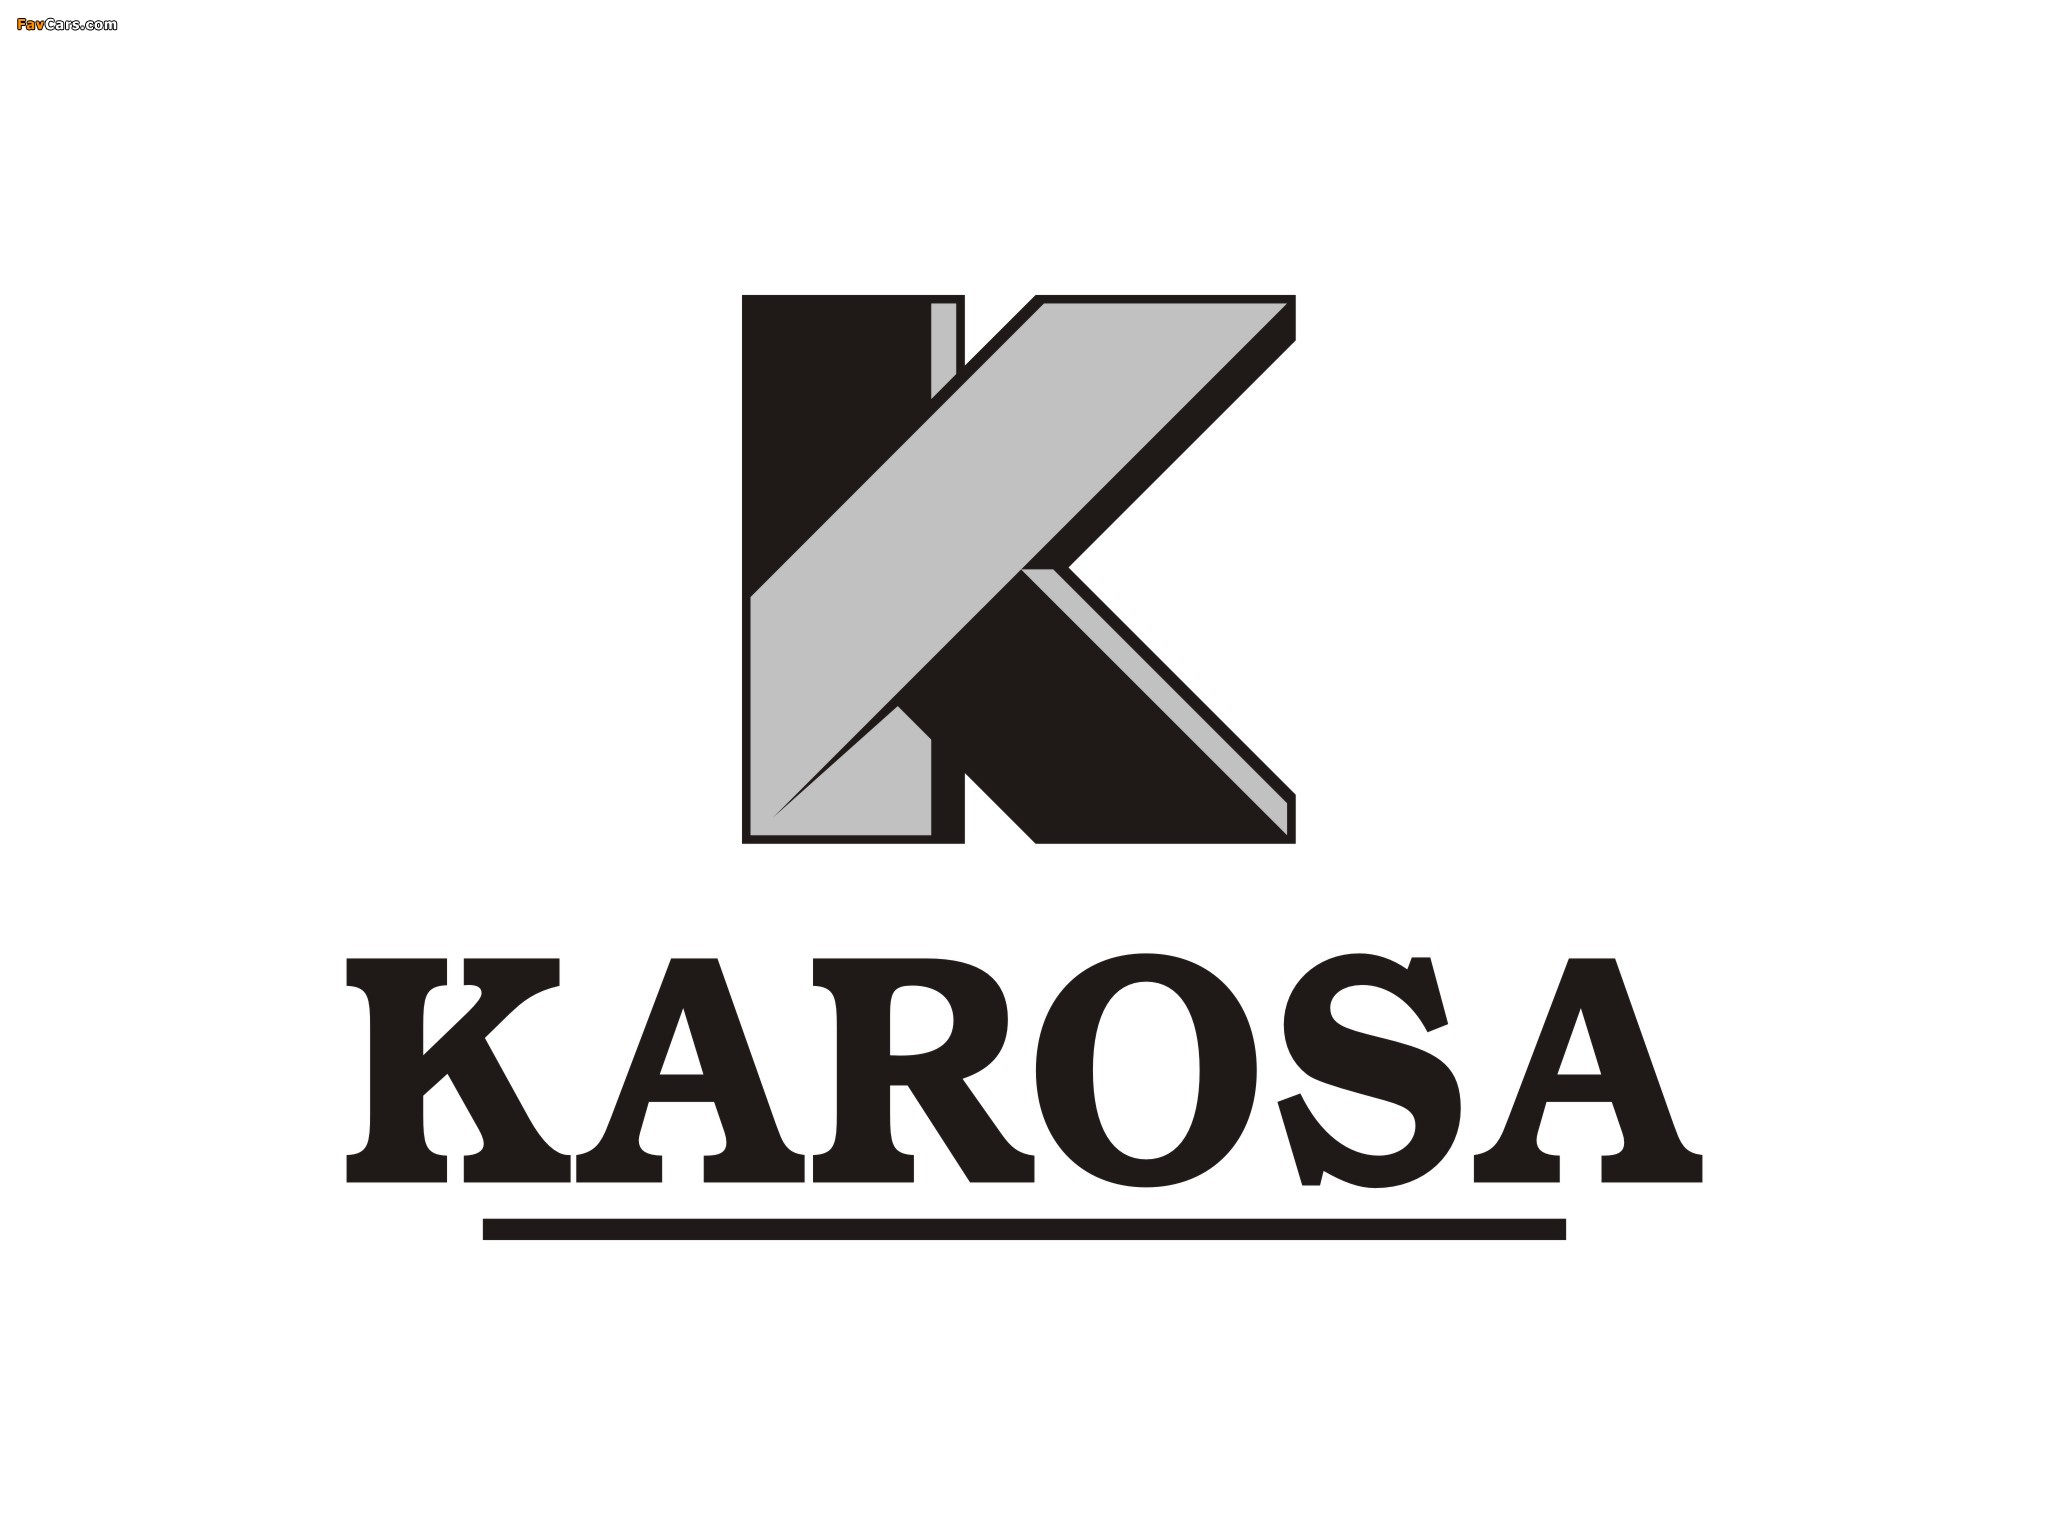 Karosa photos (2048 x 1536)